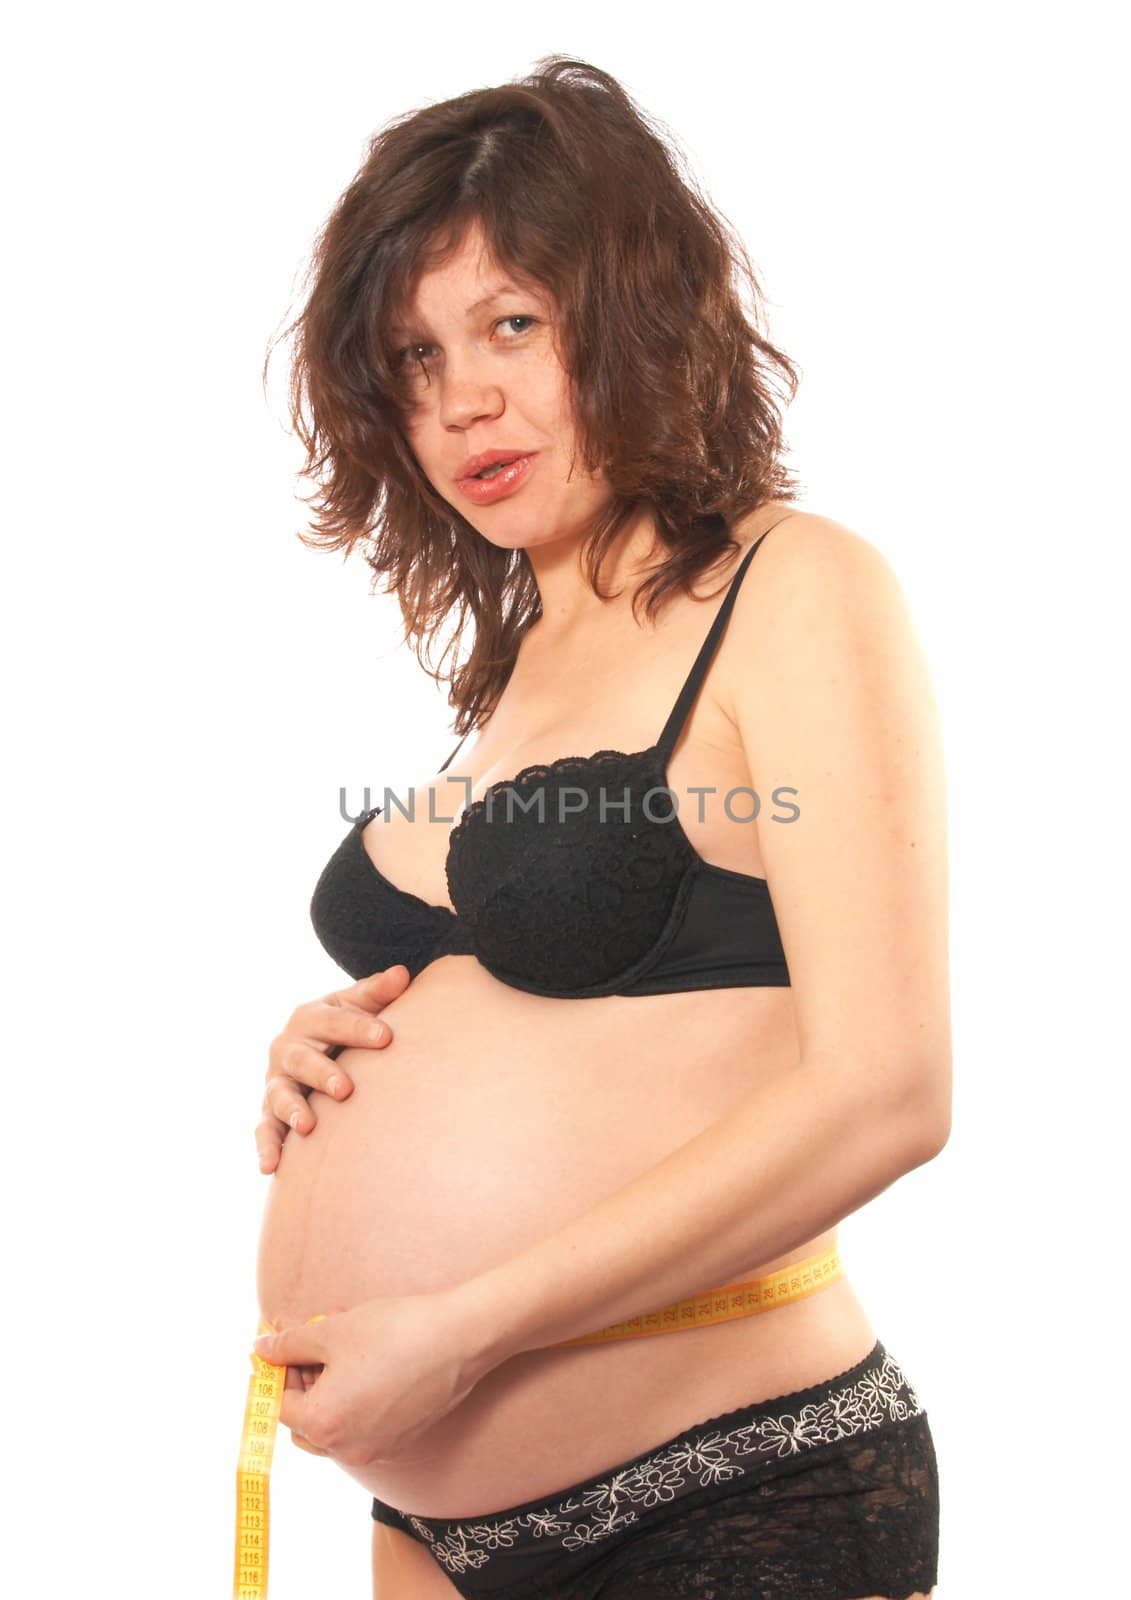 Portrait of the pregnant womanin a black bra